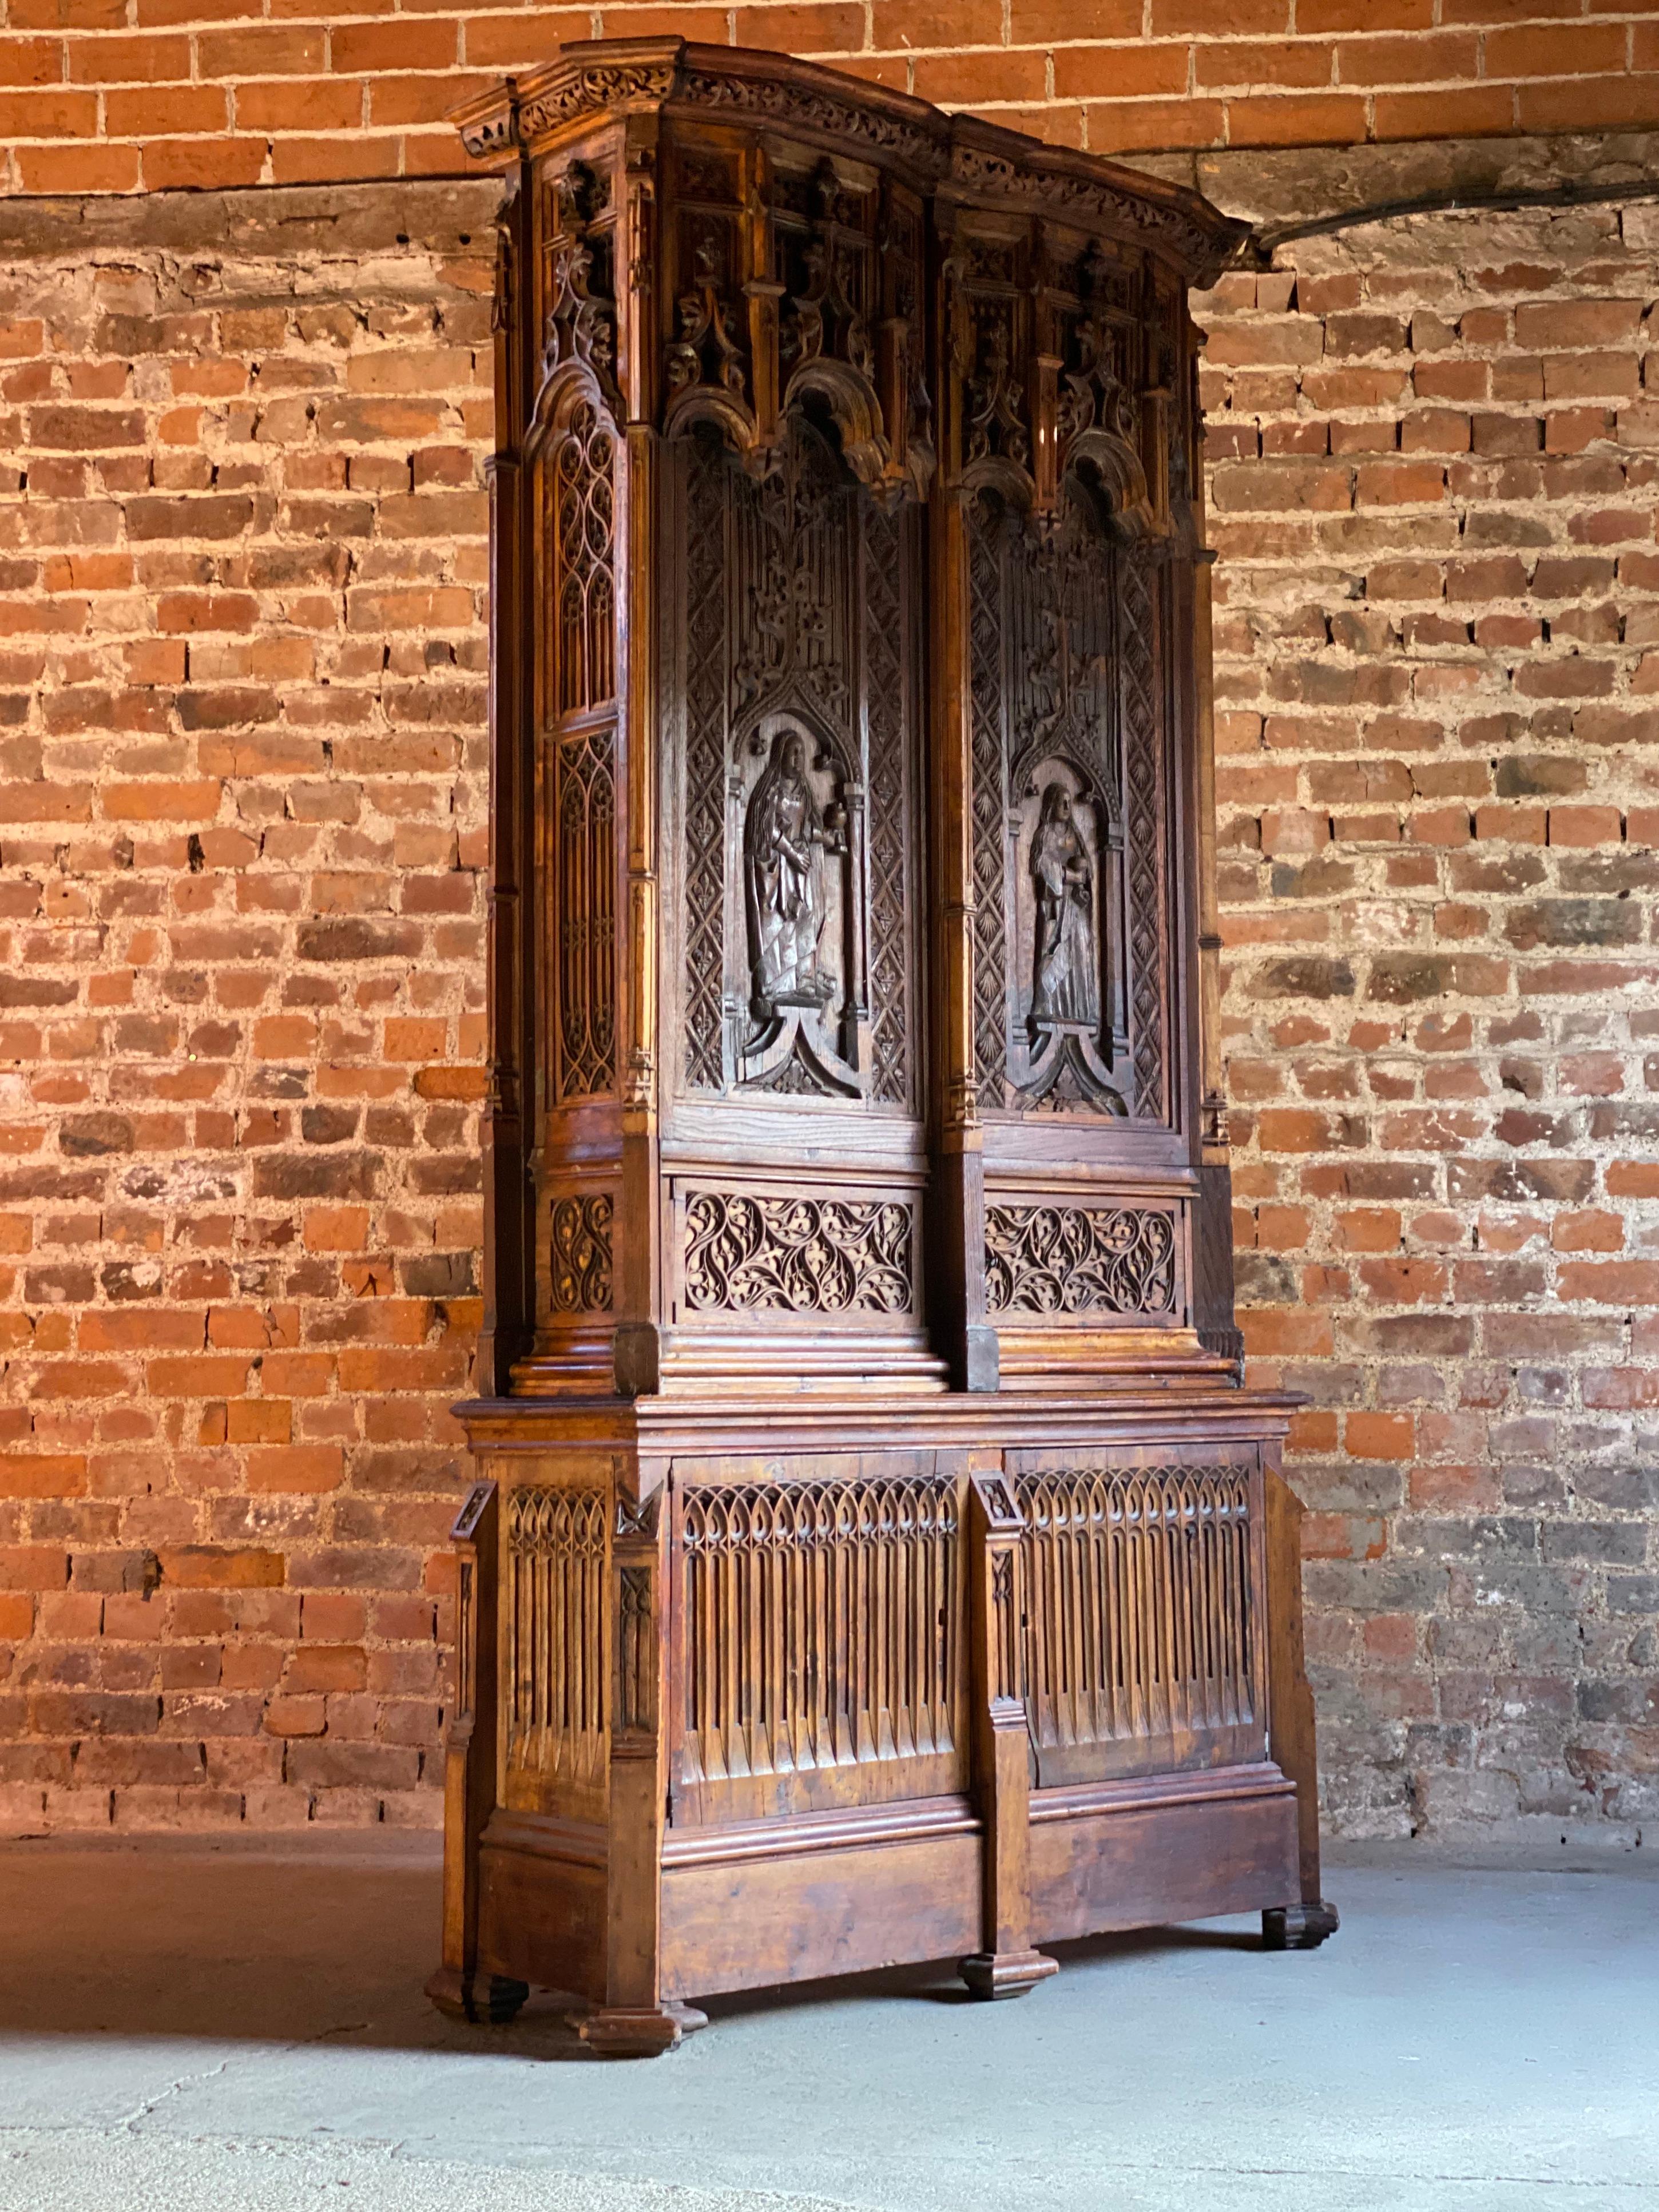 15th century furniture